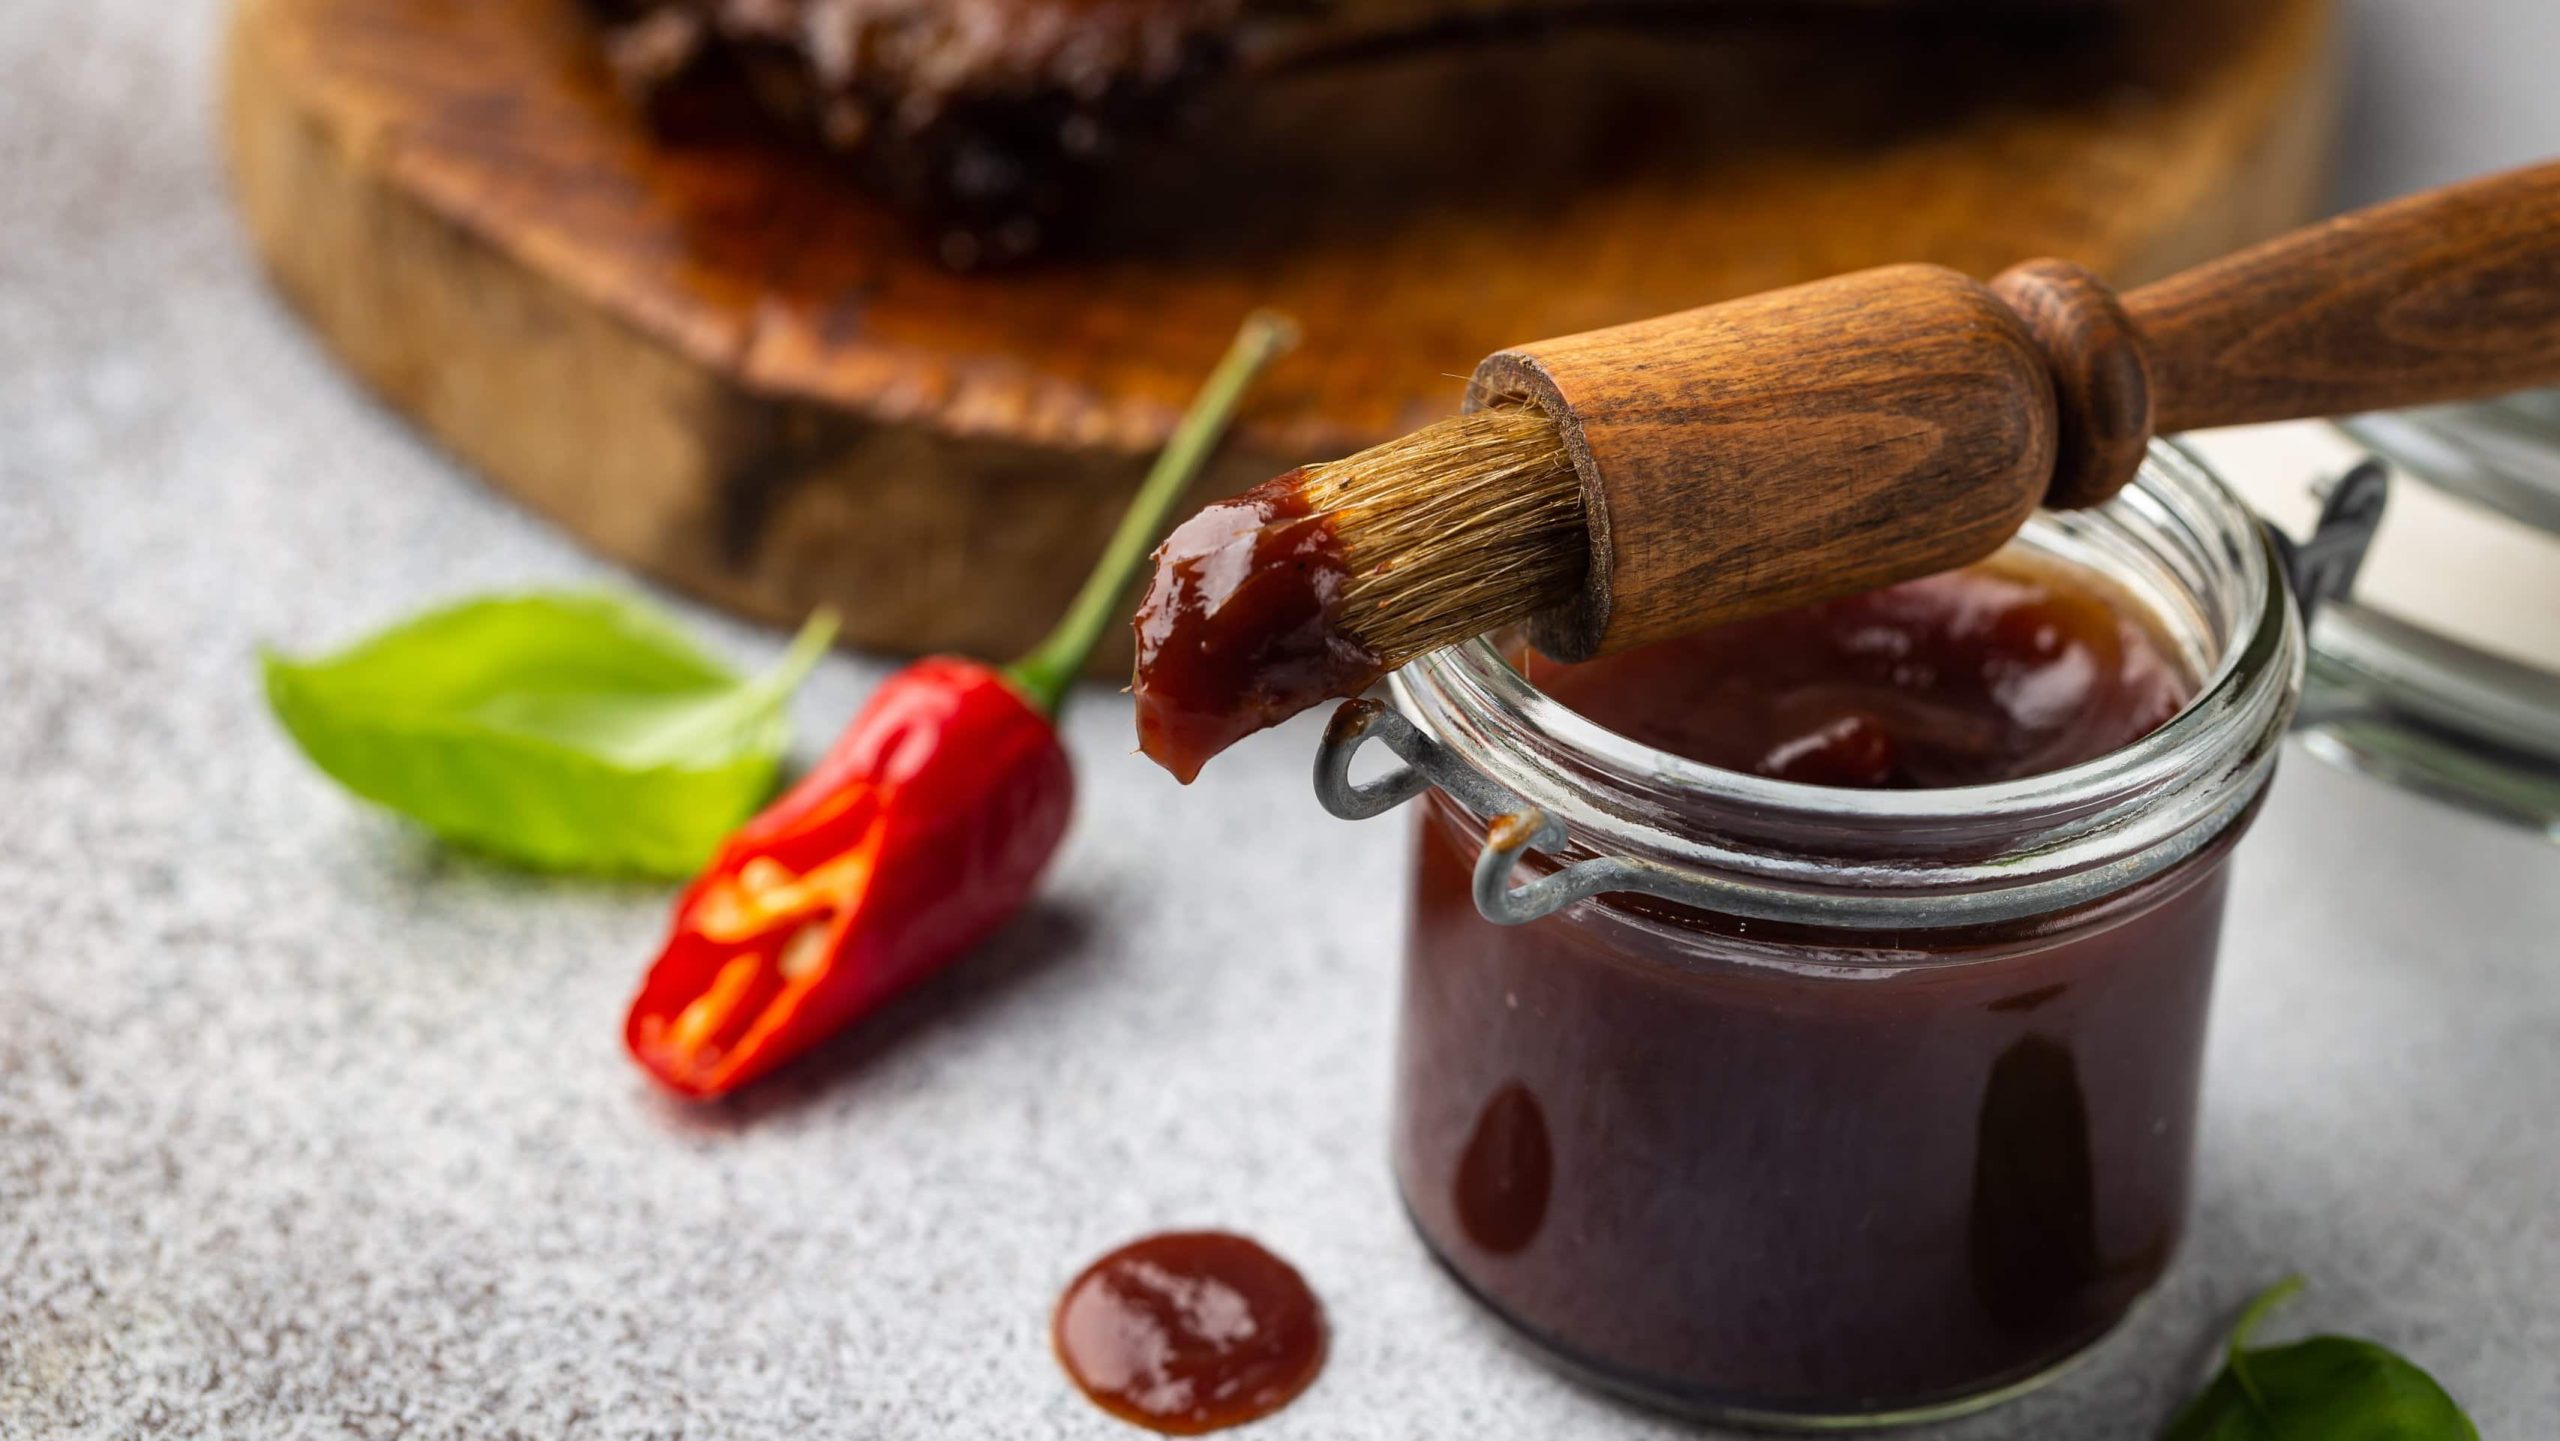 Basting Marinade und Sauce im Glas mit Glasur-Pinsel. Chili und Fleisch auf einem Holzbrett im Hintergrund. Frontalansicht.